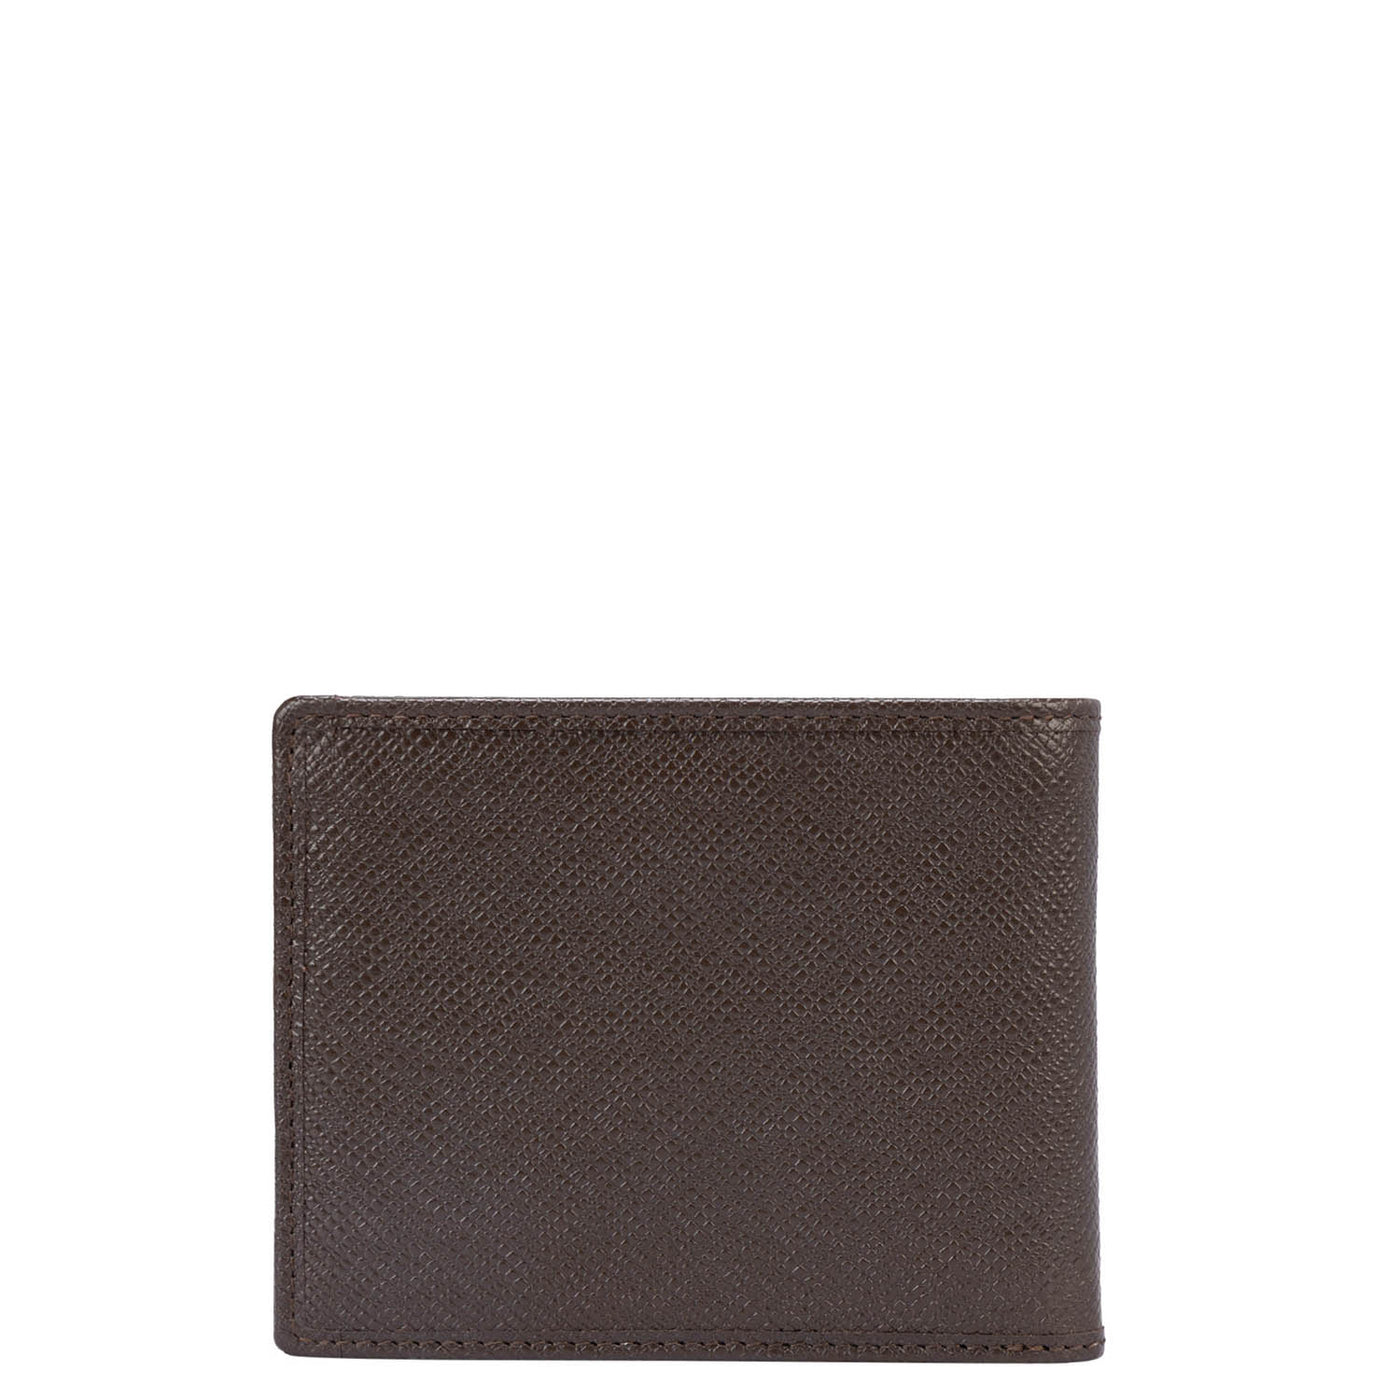 Franzy Croco Leather Mens Wallet - Oak